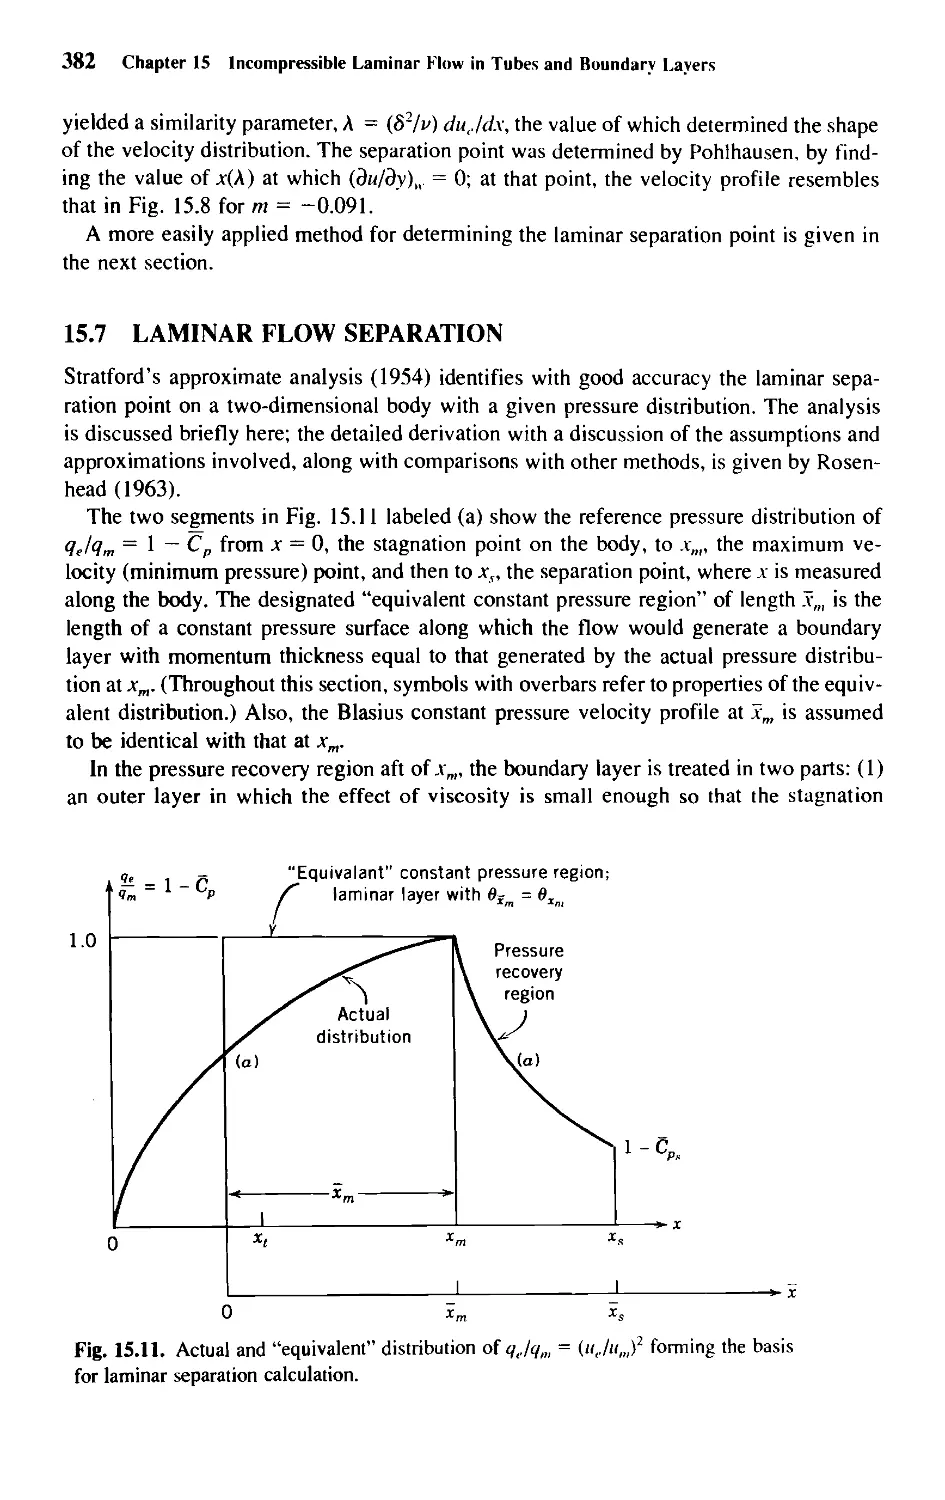 15.7 - Laminar Flow Separation